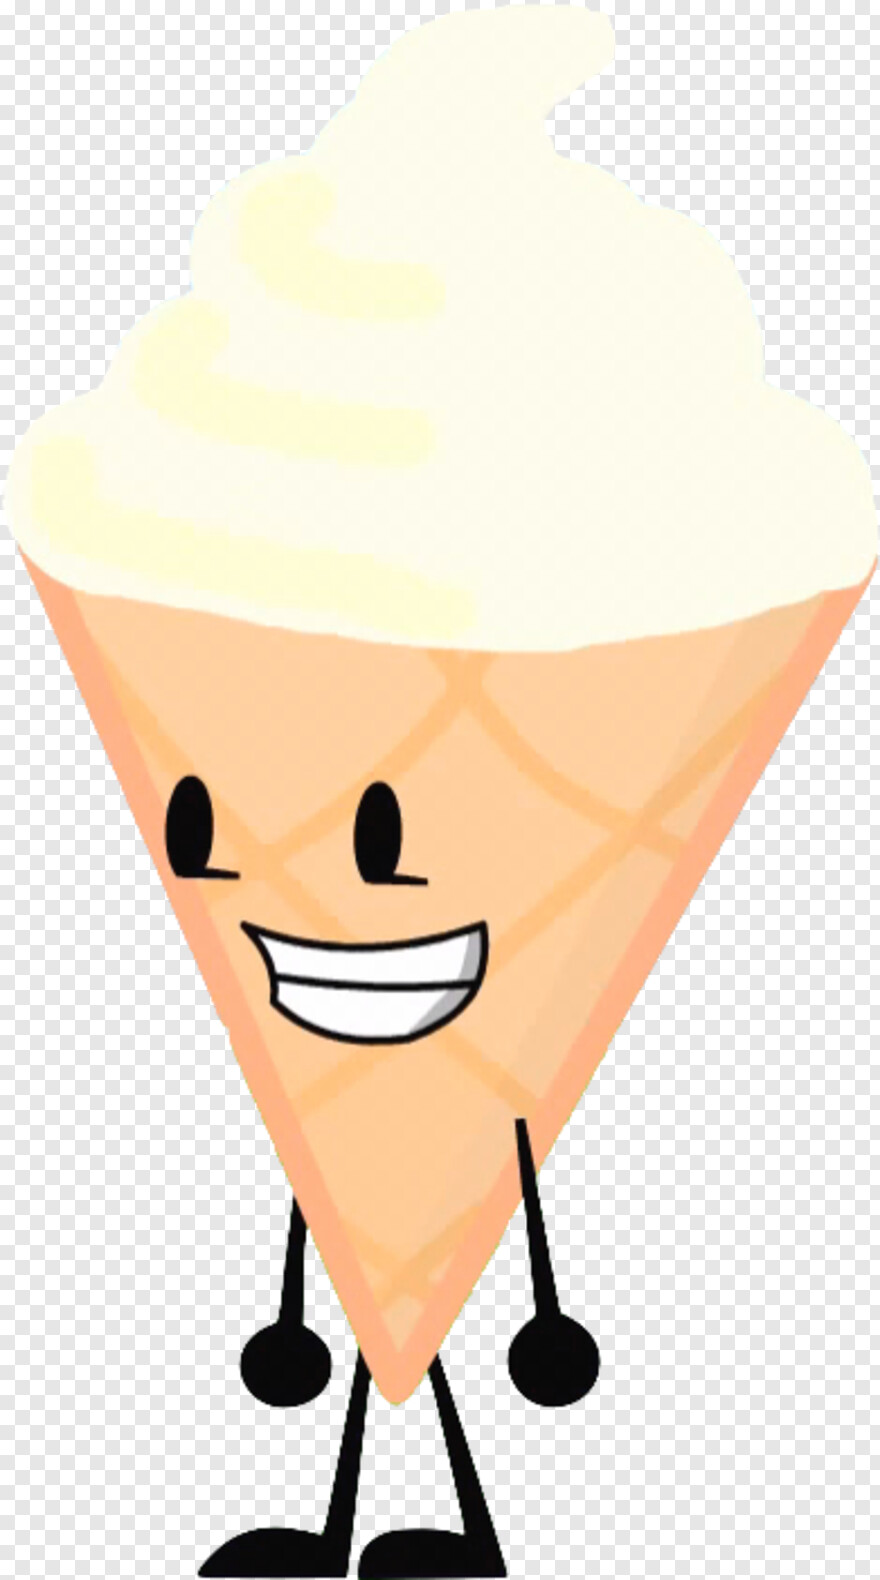 ice-cream-cone # 947289